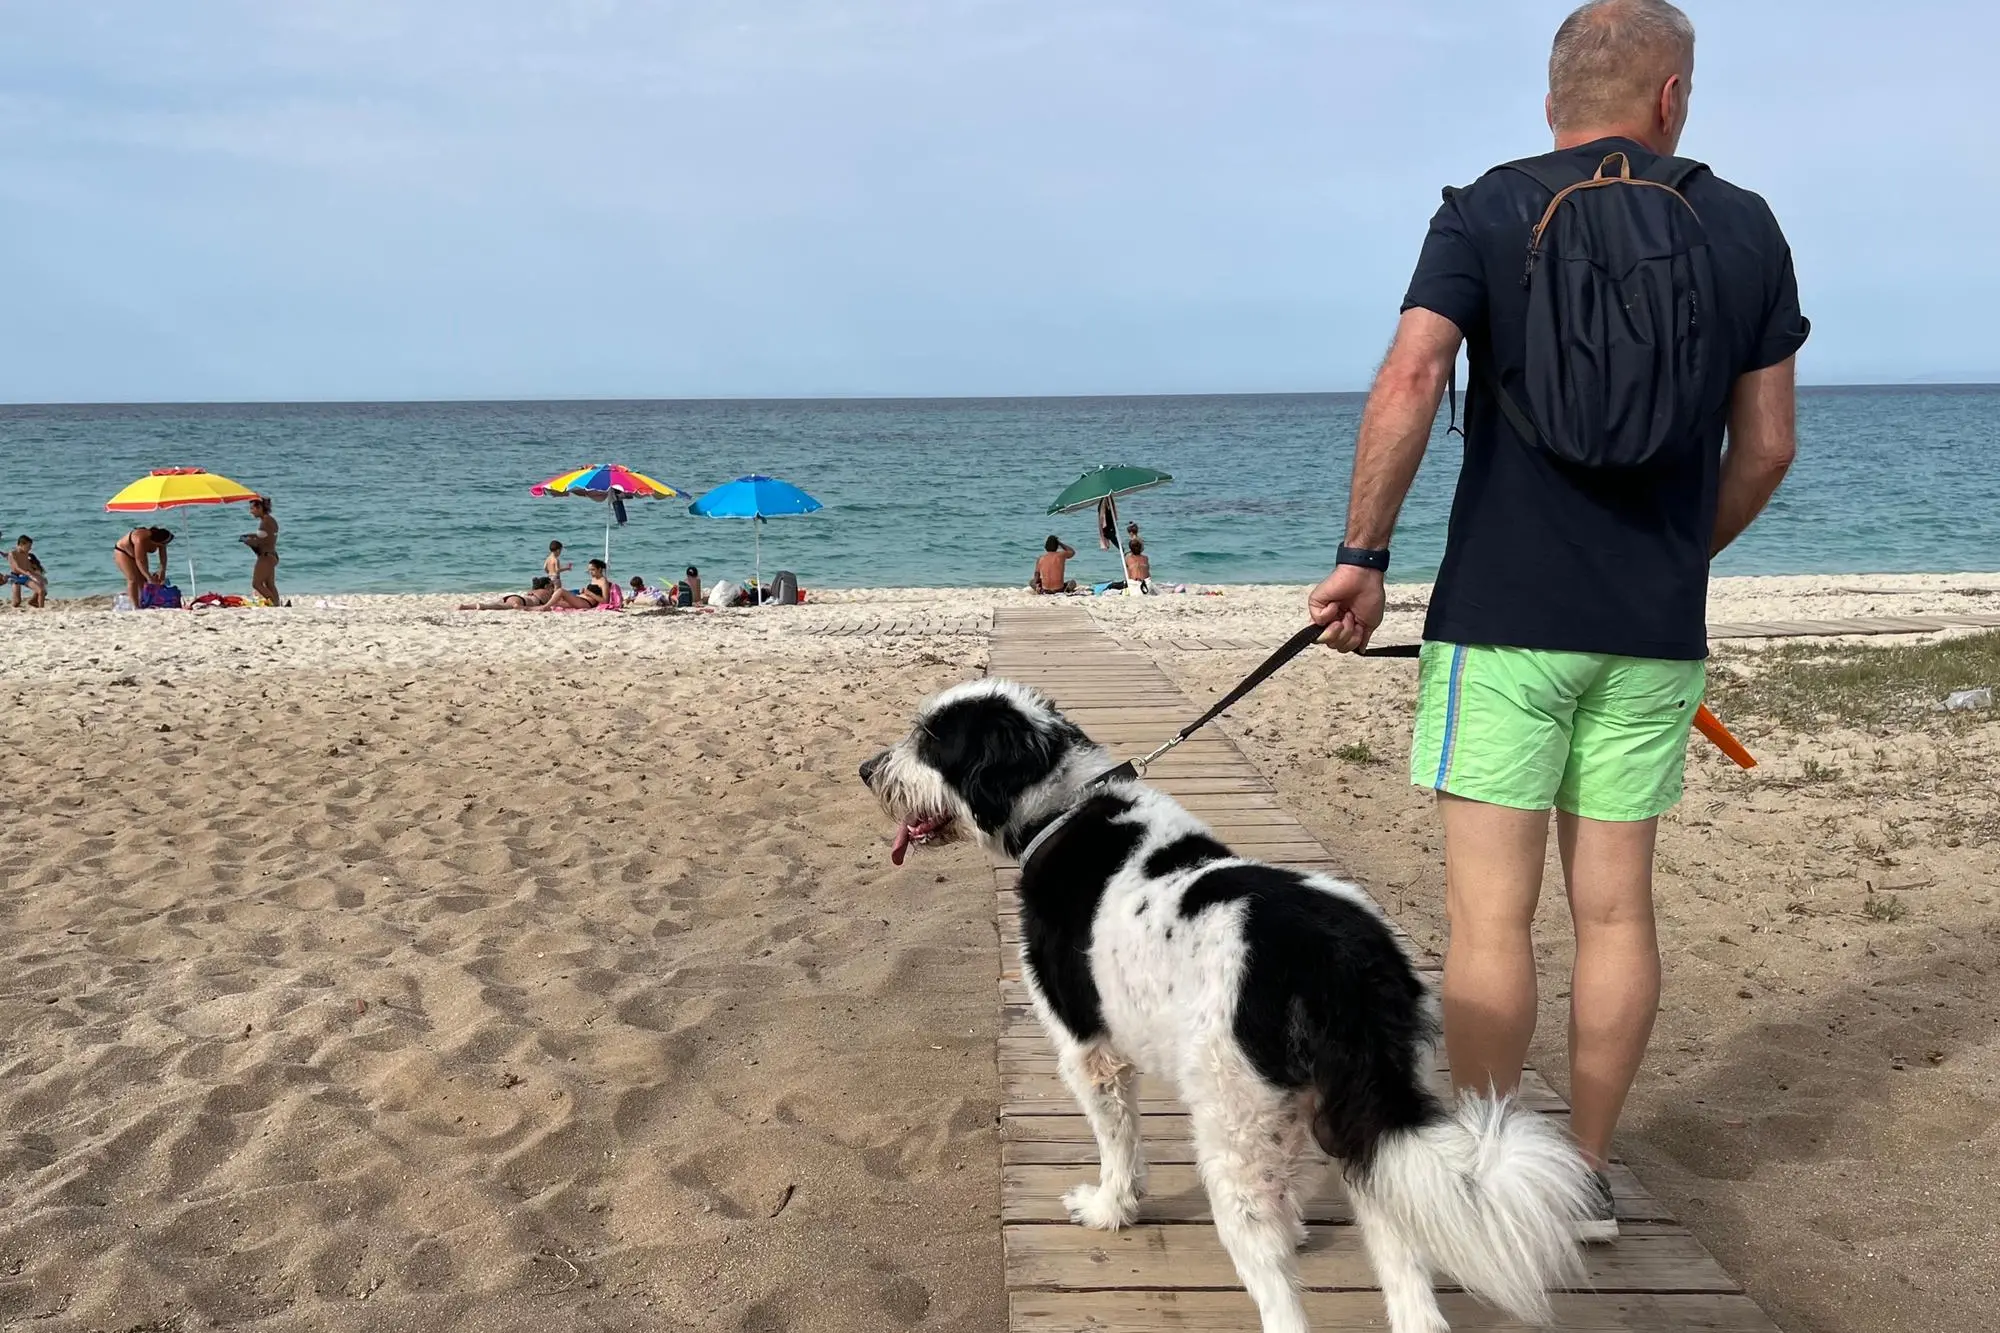 La spiaggia per i cani a Fiumesanto - foto gloria calvi 15.06.2022